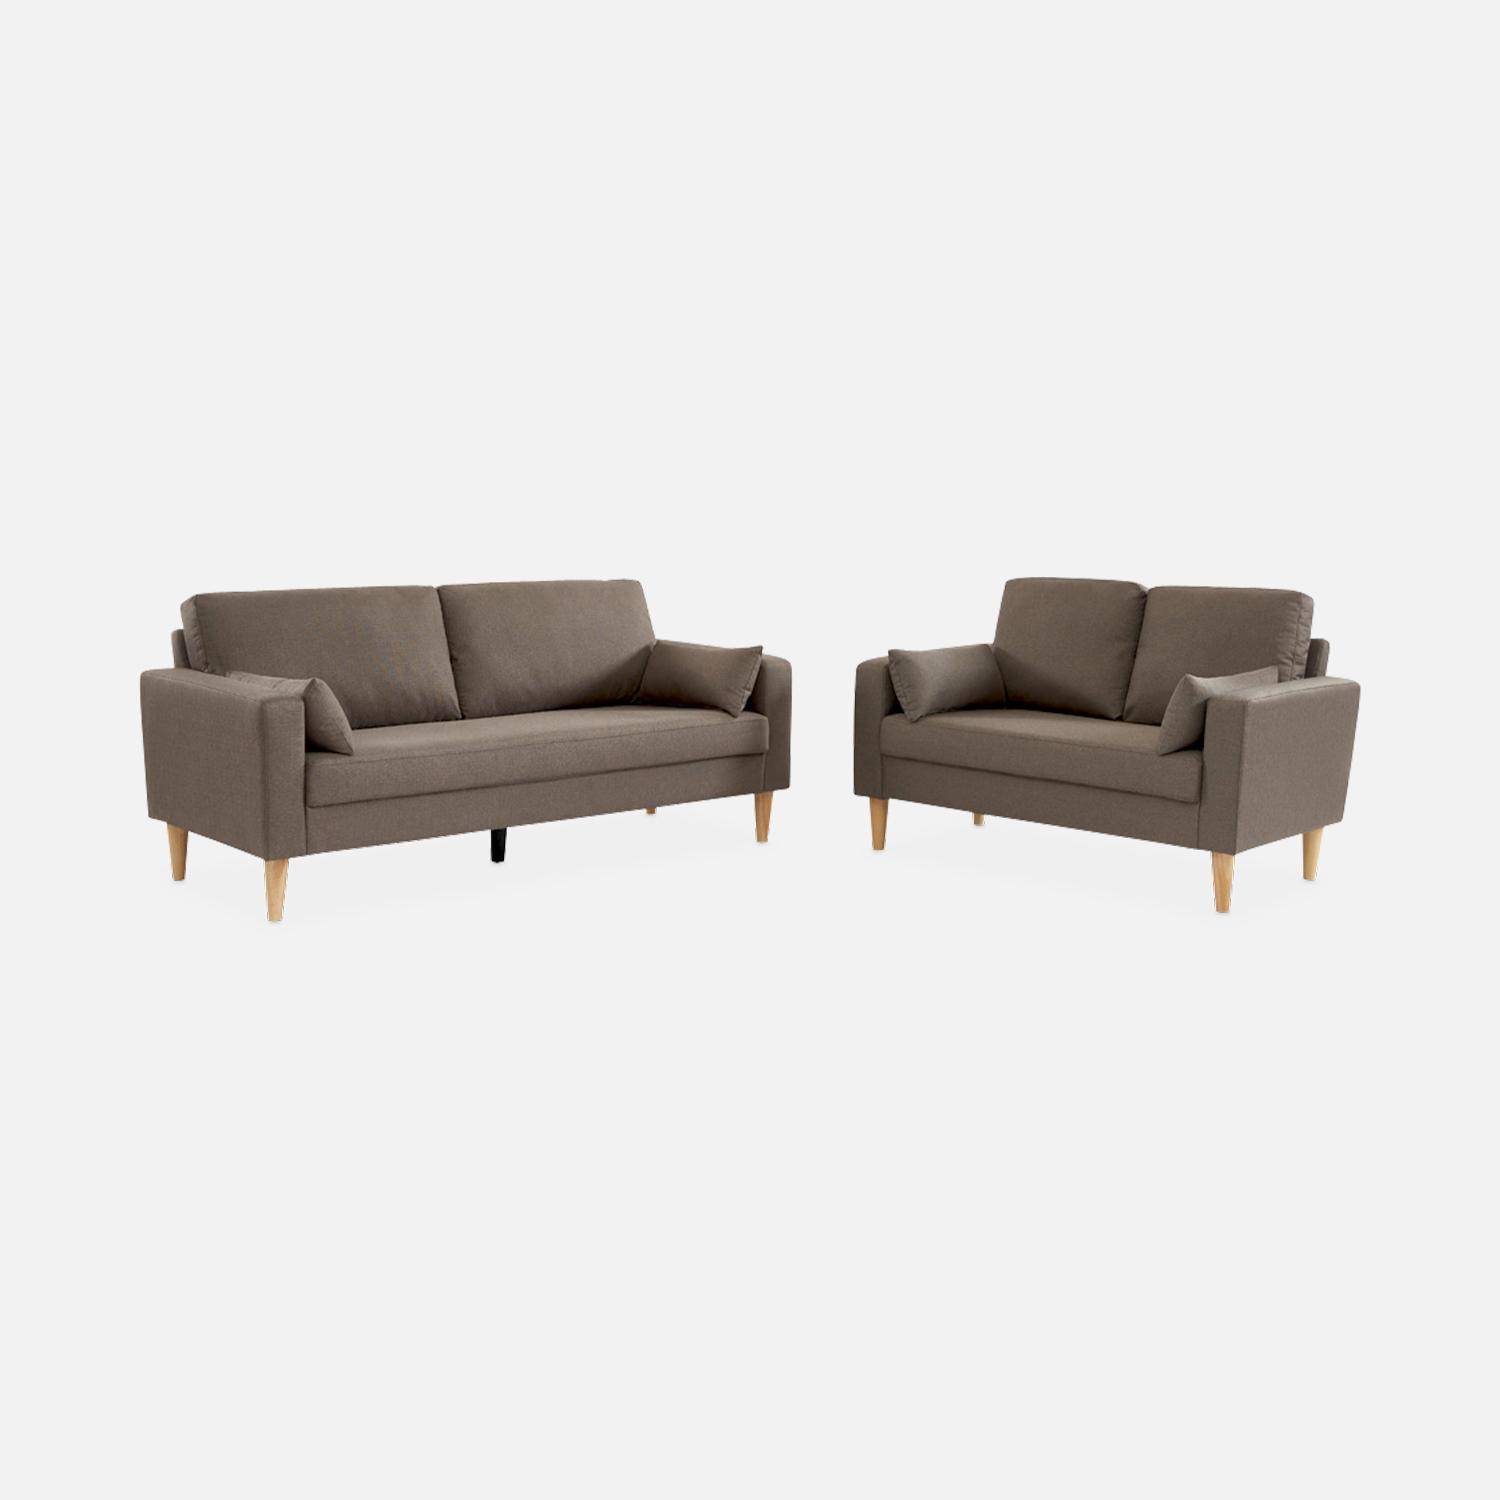 Donkergrijze stoffen driezits sofa - Bjorn - 3-zits bank met houten poten, scandinavische stijl   Photo5